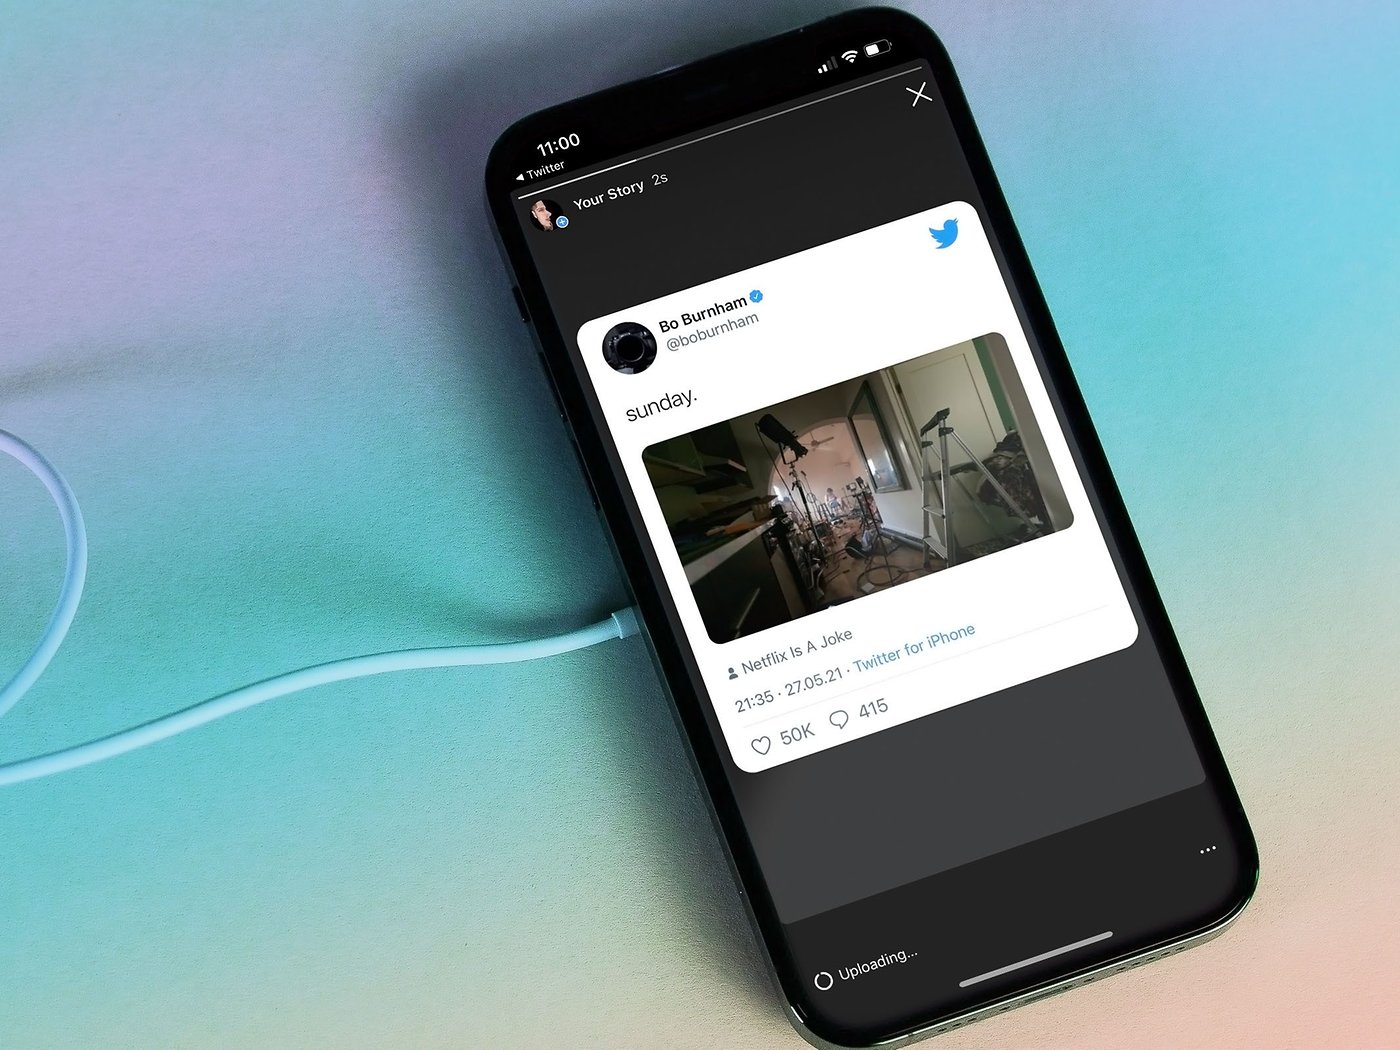 Chia sẻ tweet trên Instagram Stories trên iPhone là một trong những cách tuyệt vời để kết nối với cộng đồng mạng. Với chức năng này, bạn có thể dễ dàng chia sẻ suy nghĩ, kinh nghiệm hoặc những bức ảnh đáng nhớ với mọi người.